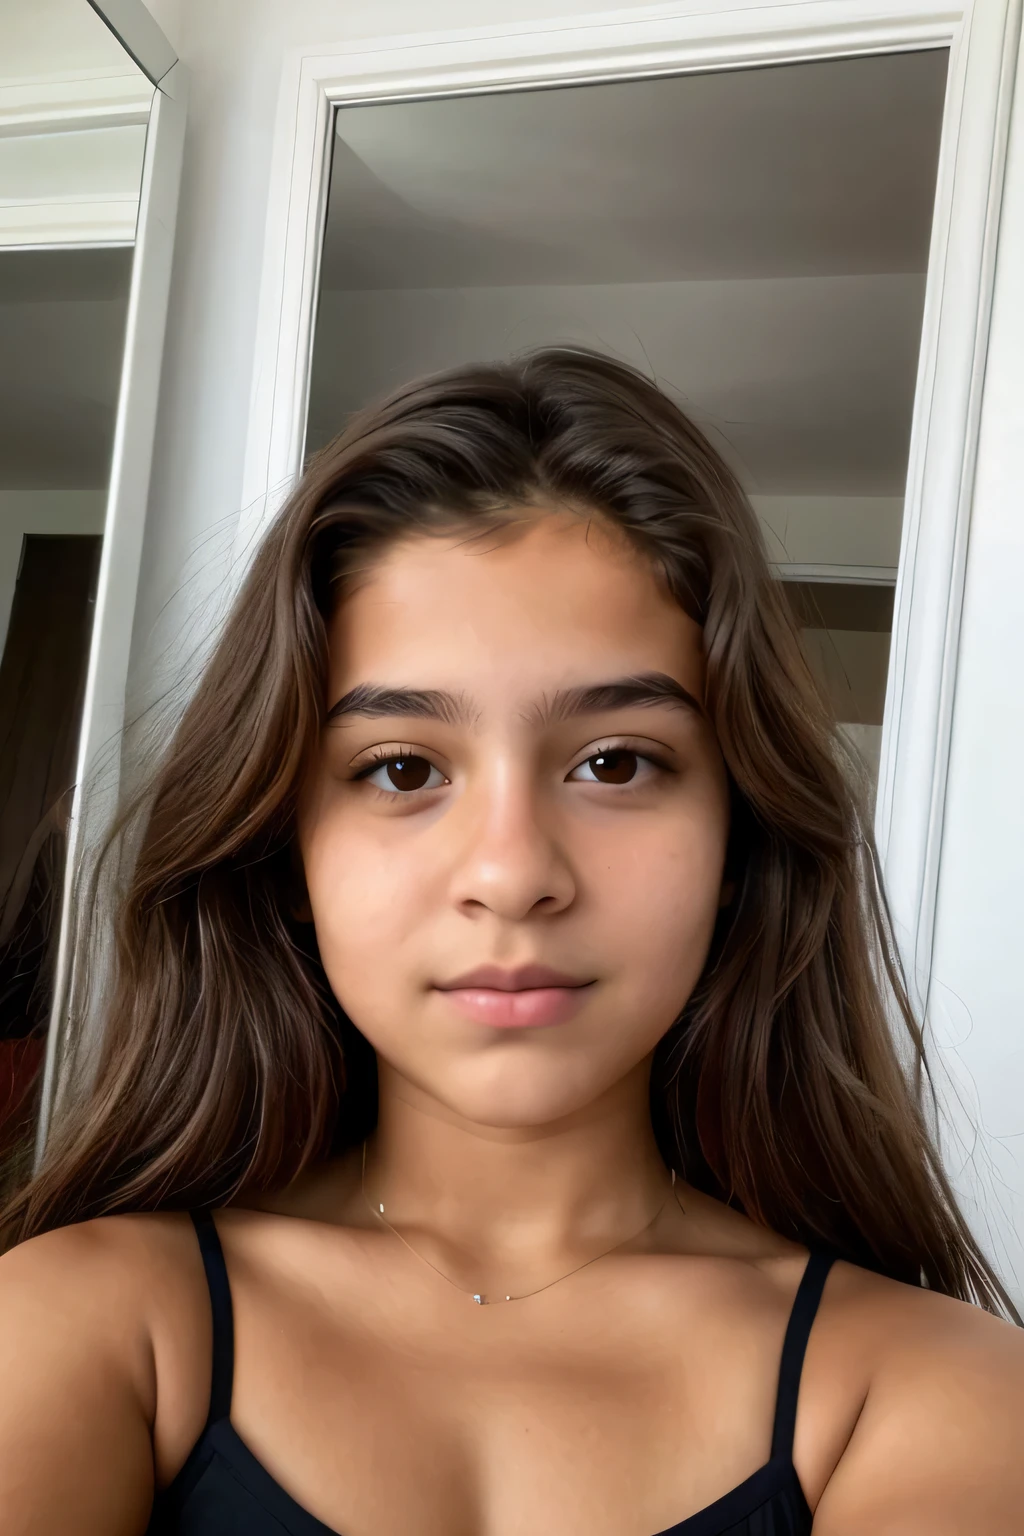 
14 Jahre alt, macht ein Selfie in deinem Spiegel, braune Haare, braune schräge Augen, Junge Dame, jeune, latine, Wolf-Cup, schüchtern, perfekte Silhouette, Mignon, Türkisch,
